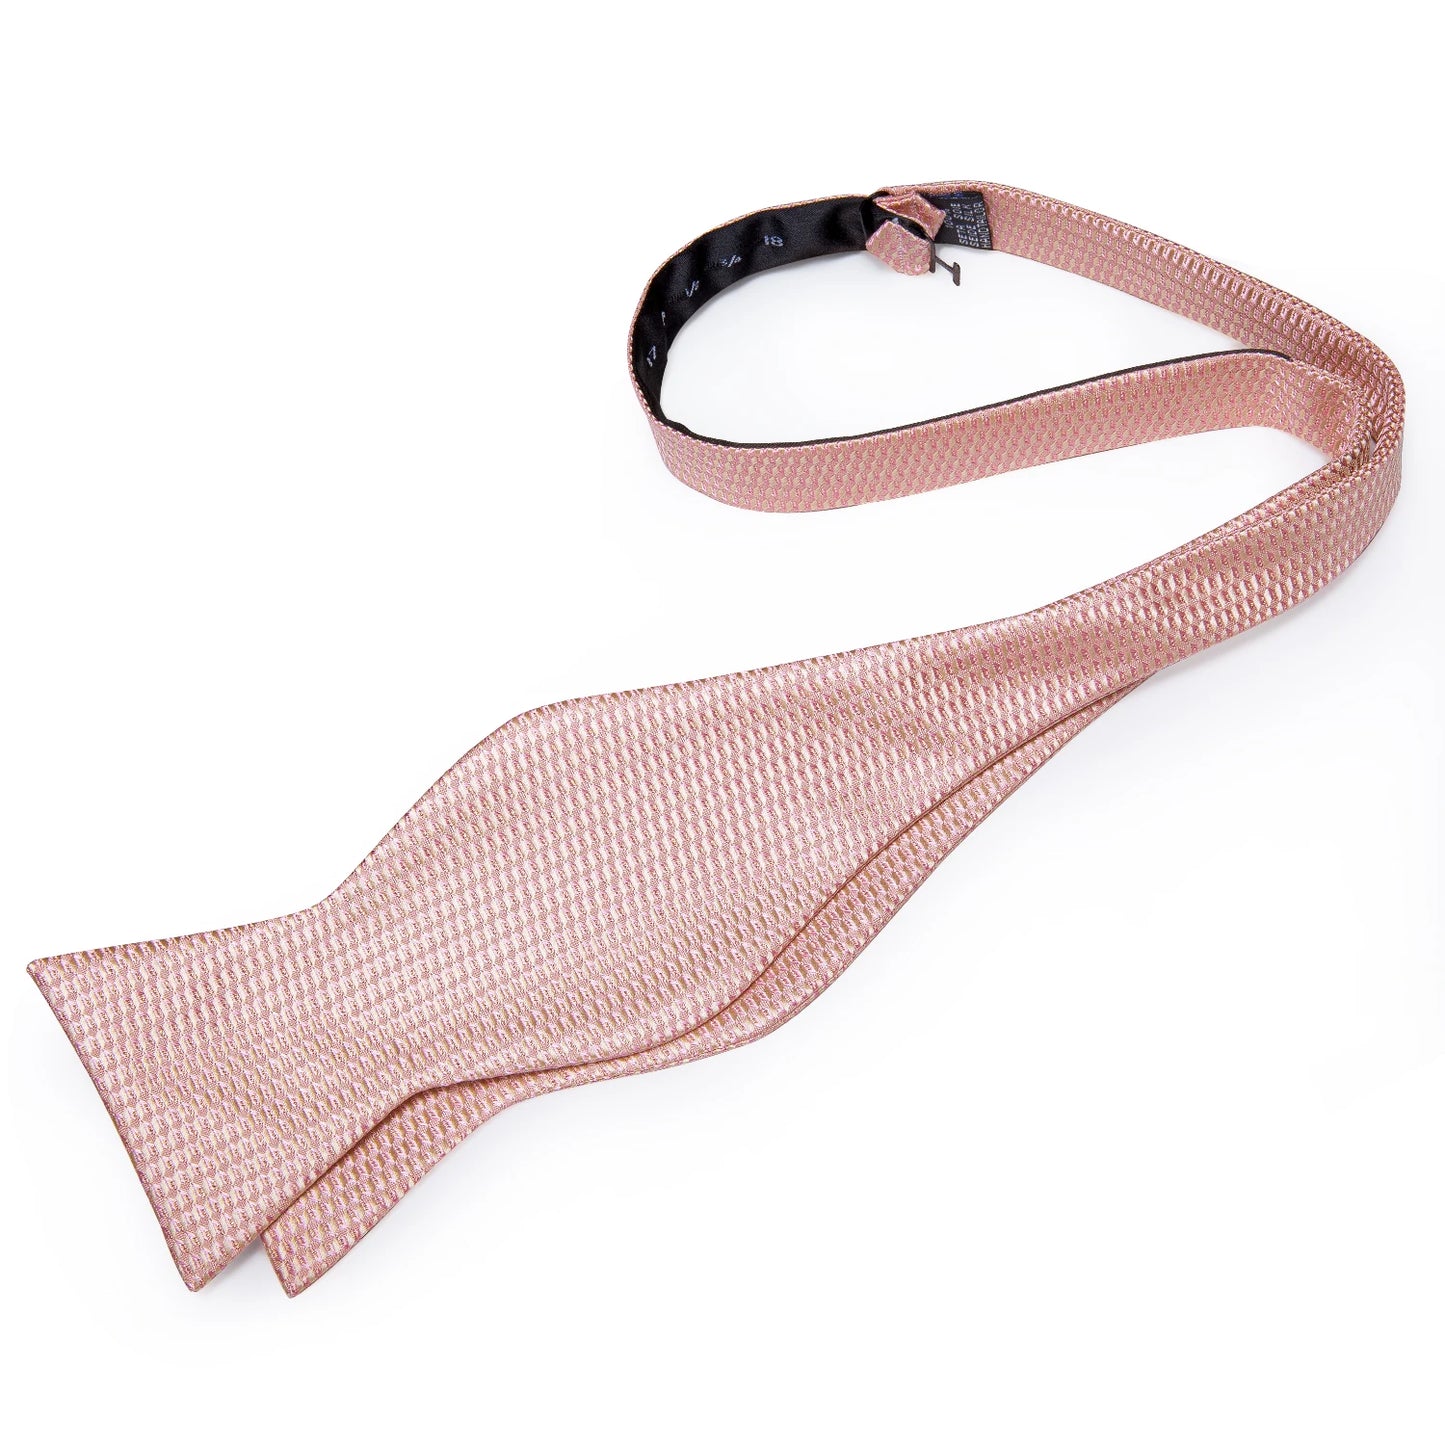 Pink Plaid Self-Tie Silk Bowtie Set